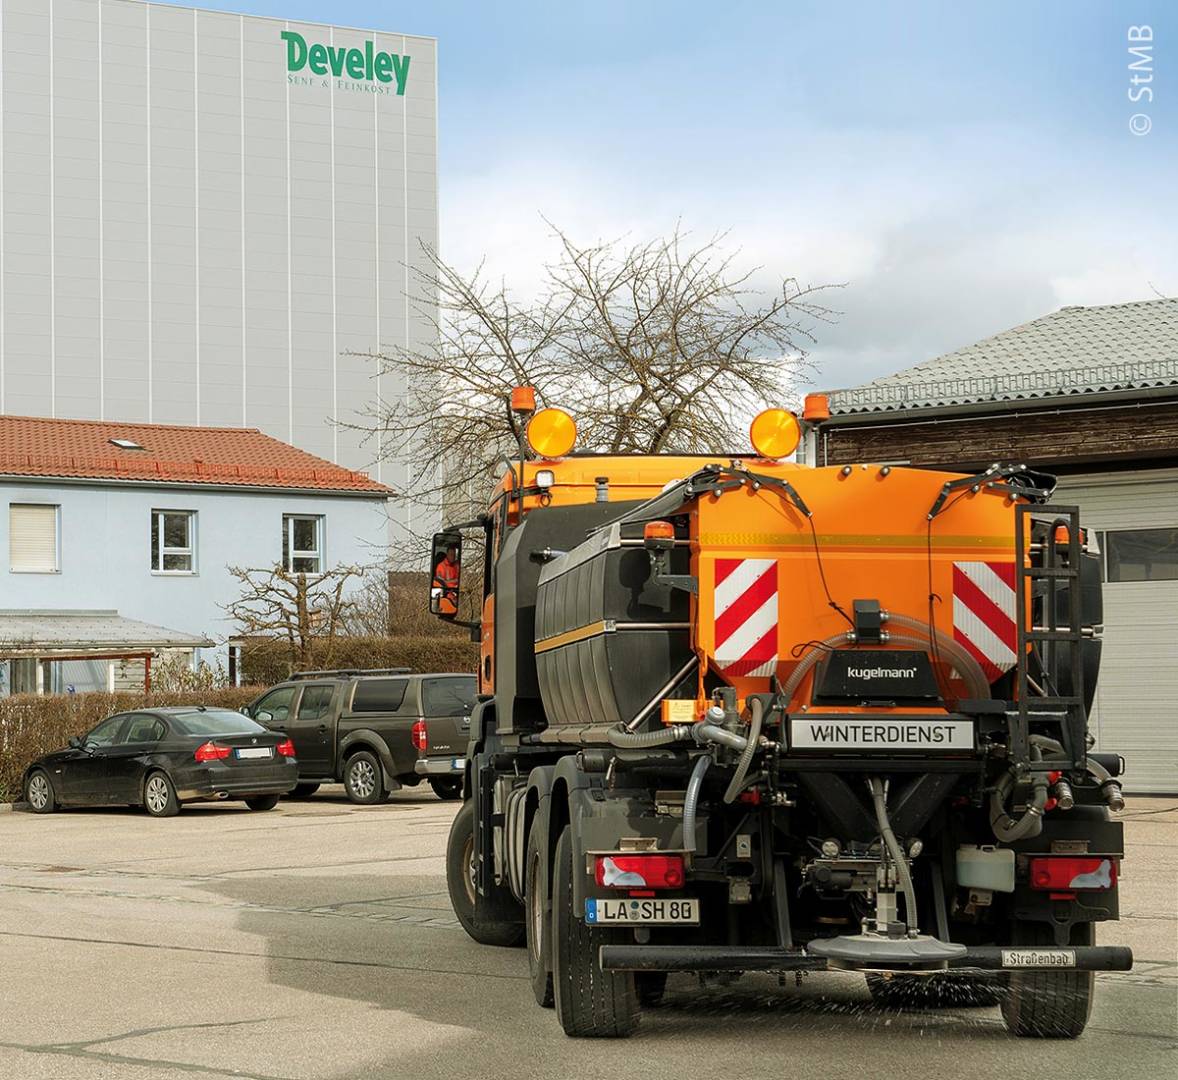 Winterdienst-LKW vor Develey-Werk: Develey produziert nicht nur eingelegte Gurken, sondern auch Gurkensole gegen Schnee und Eis.